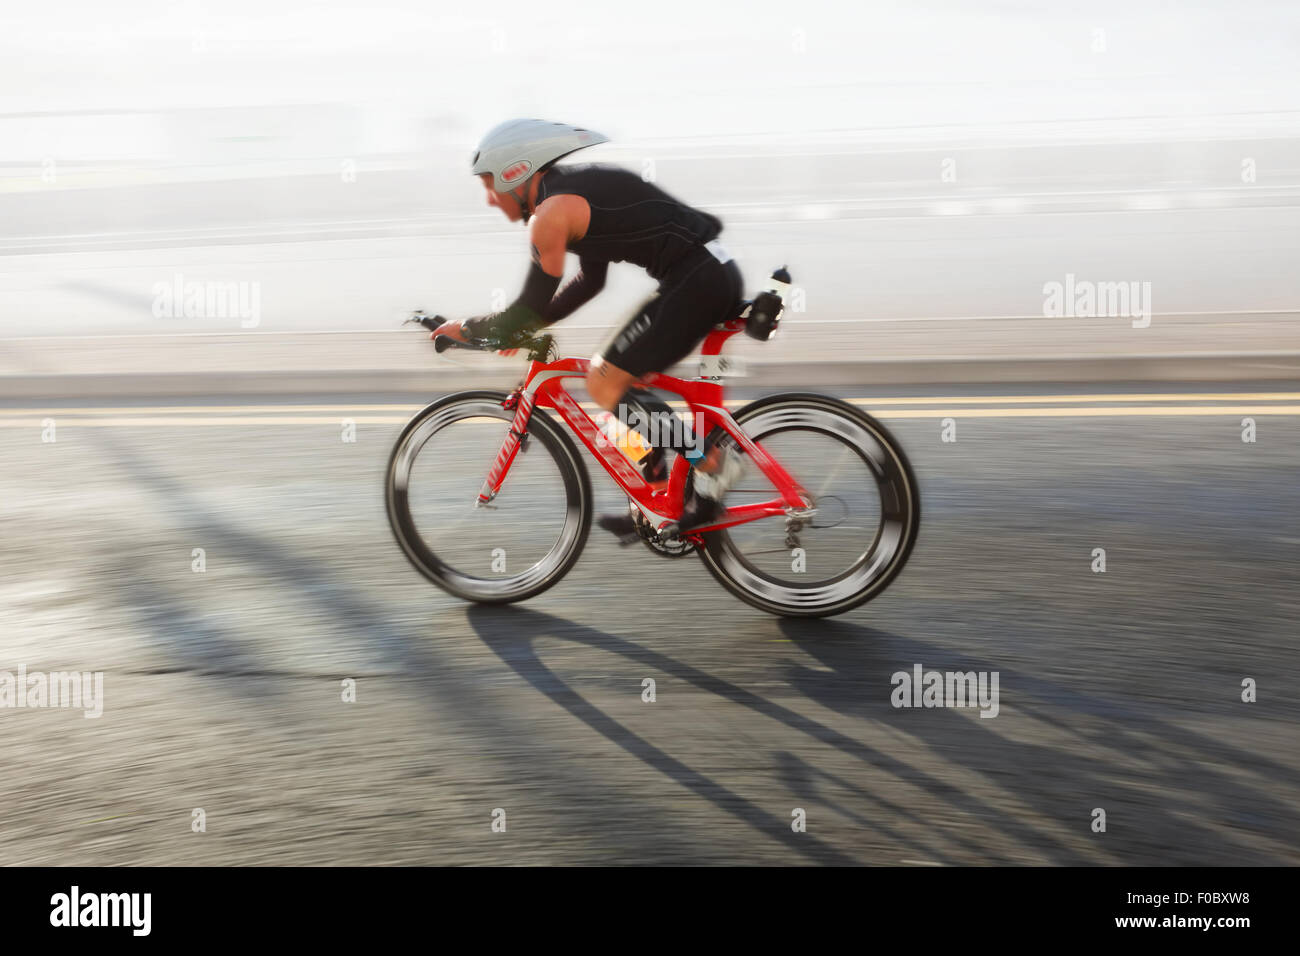 Sportif équitation vélo à journée ensoleillée sur la route côtière, blurred motion Banque D'Images